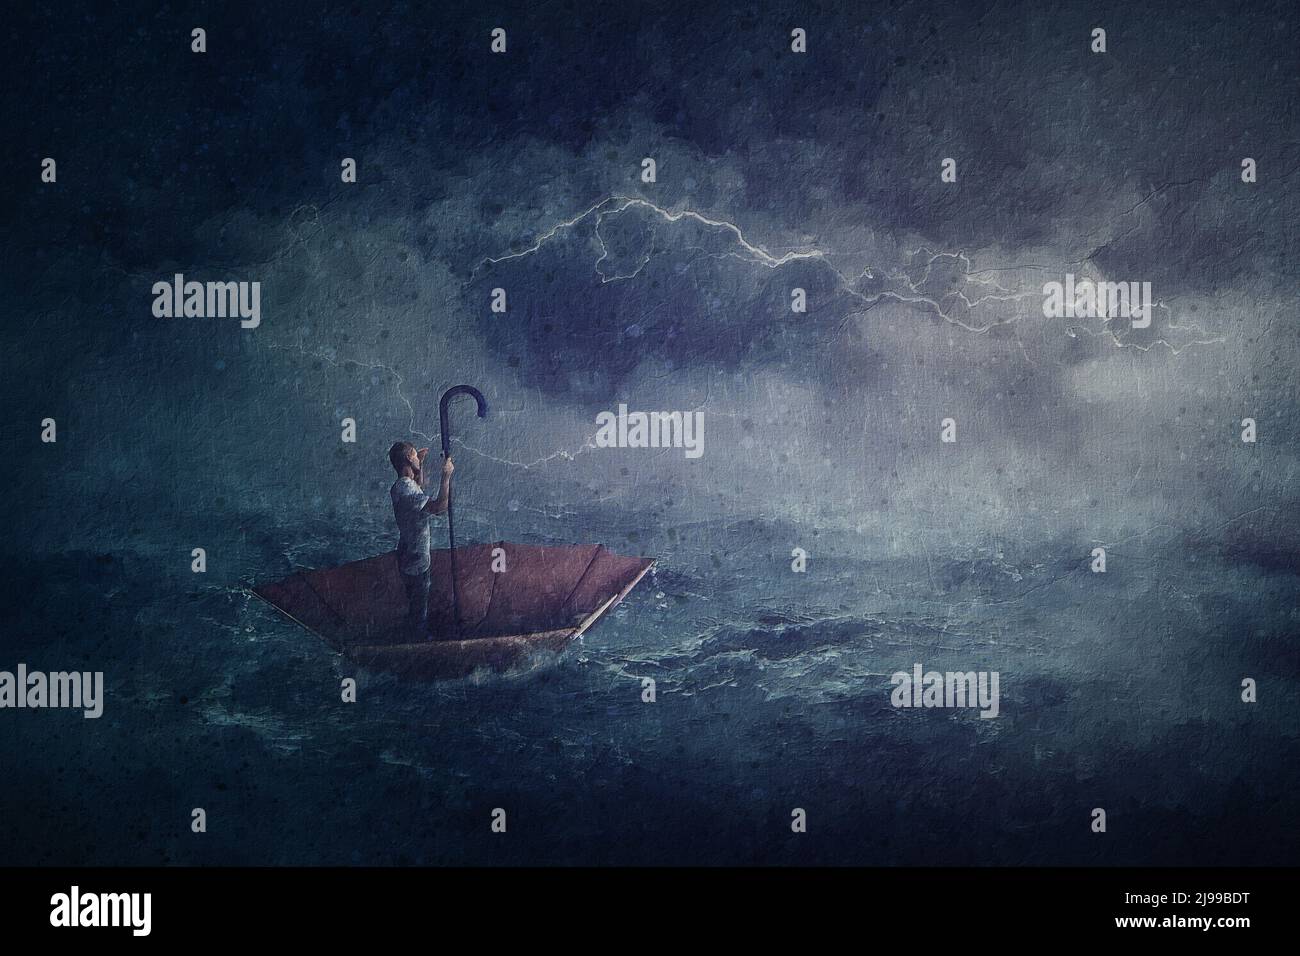 Peinture à la voile avec une personne seule dans l'océan flottant sur un bateau-parapluie. Scène surréaliste avec une tempête sur la mer. Aventure fantastique, conquérant Banque D'Images